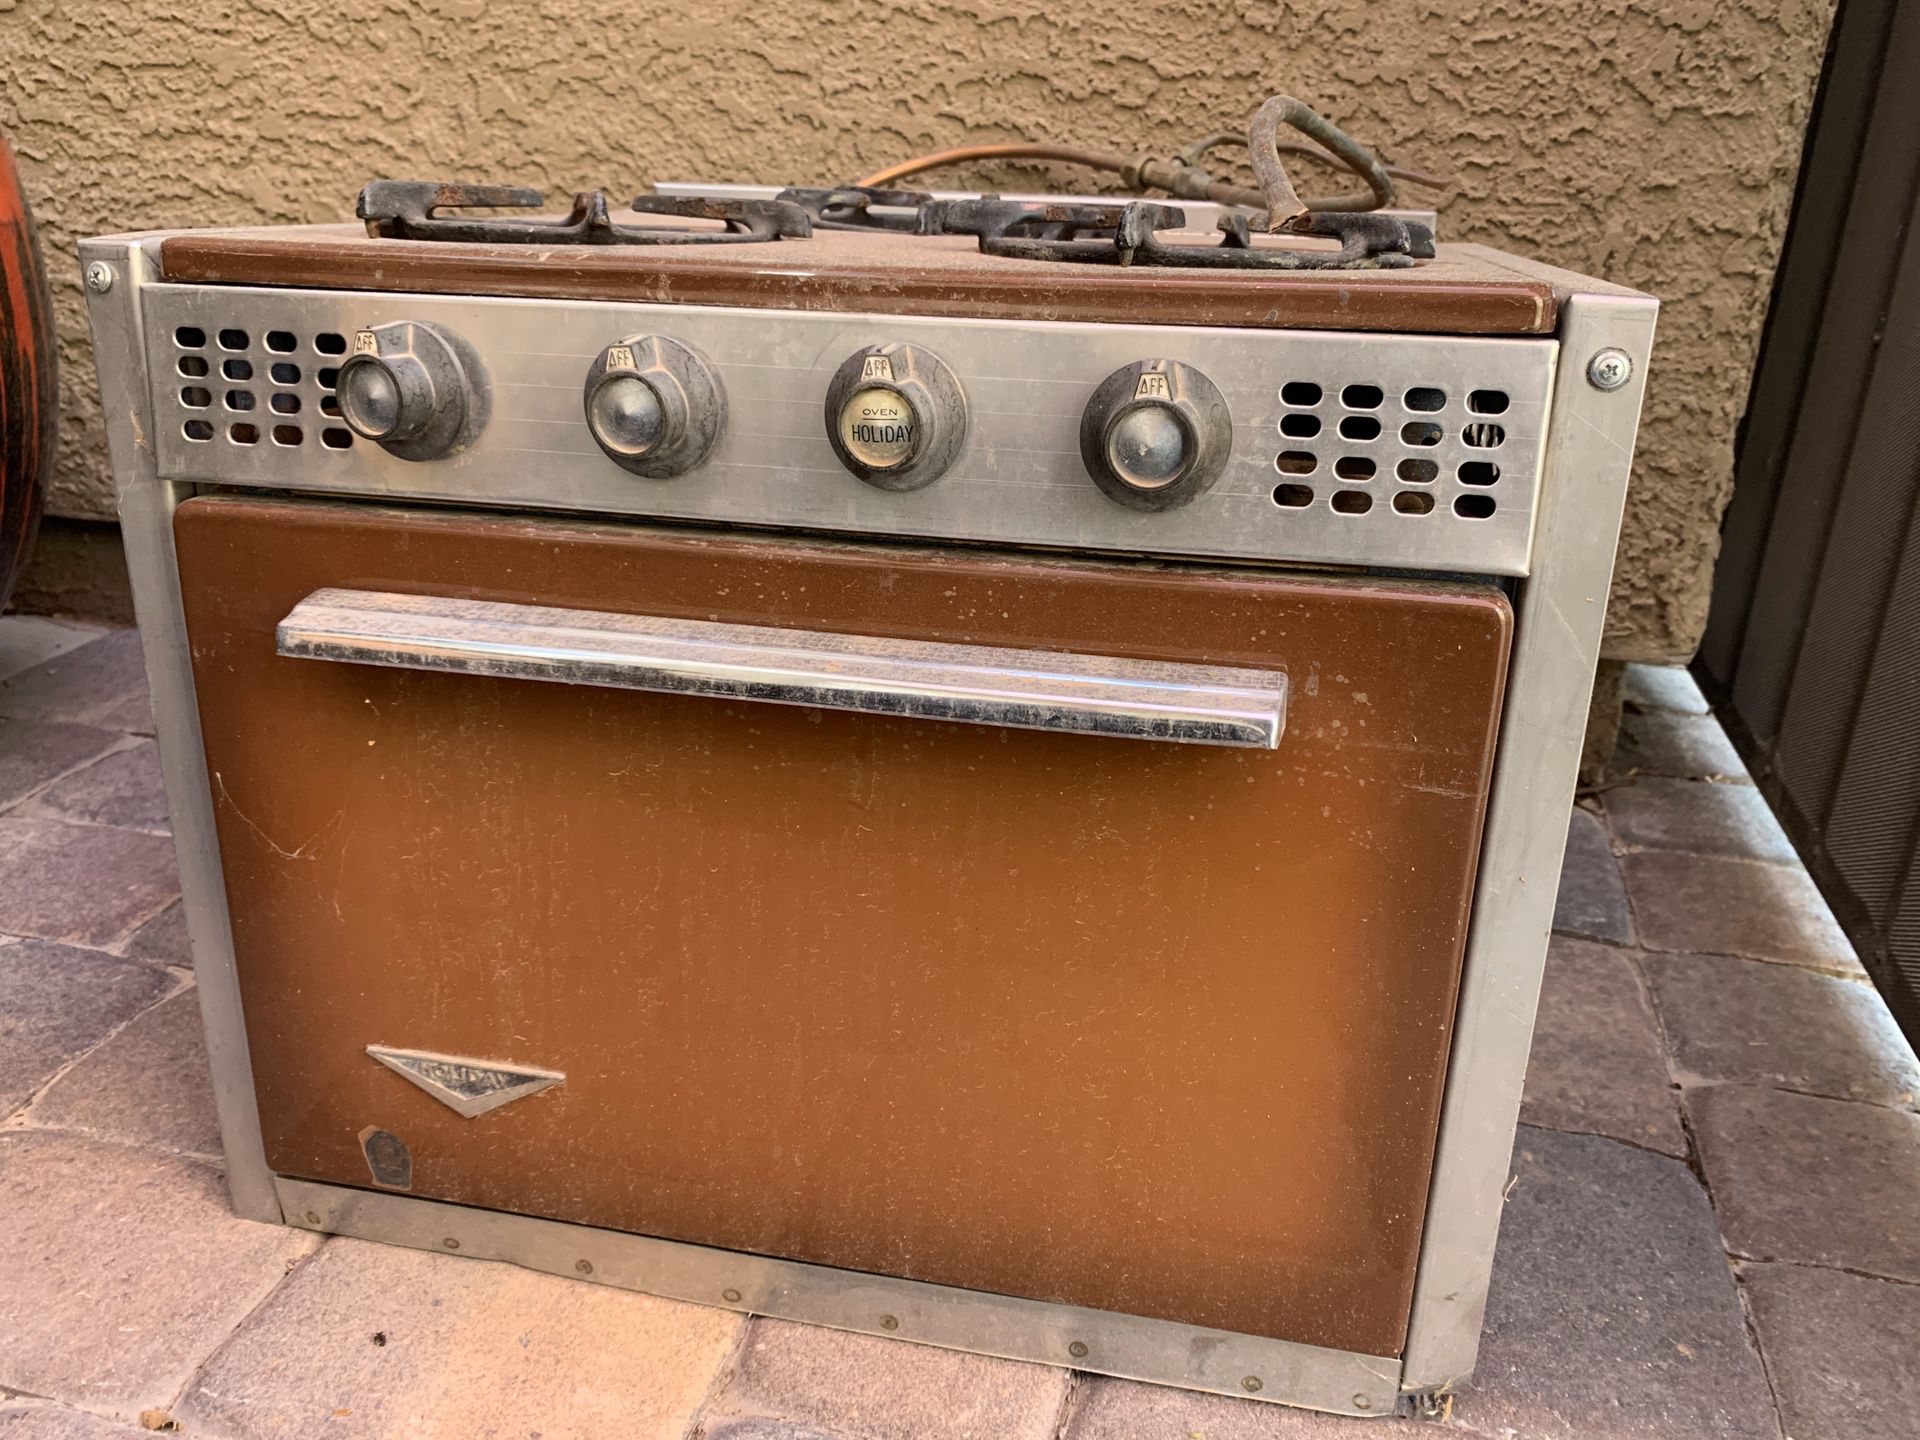 Vintage Camper Trailer Oven